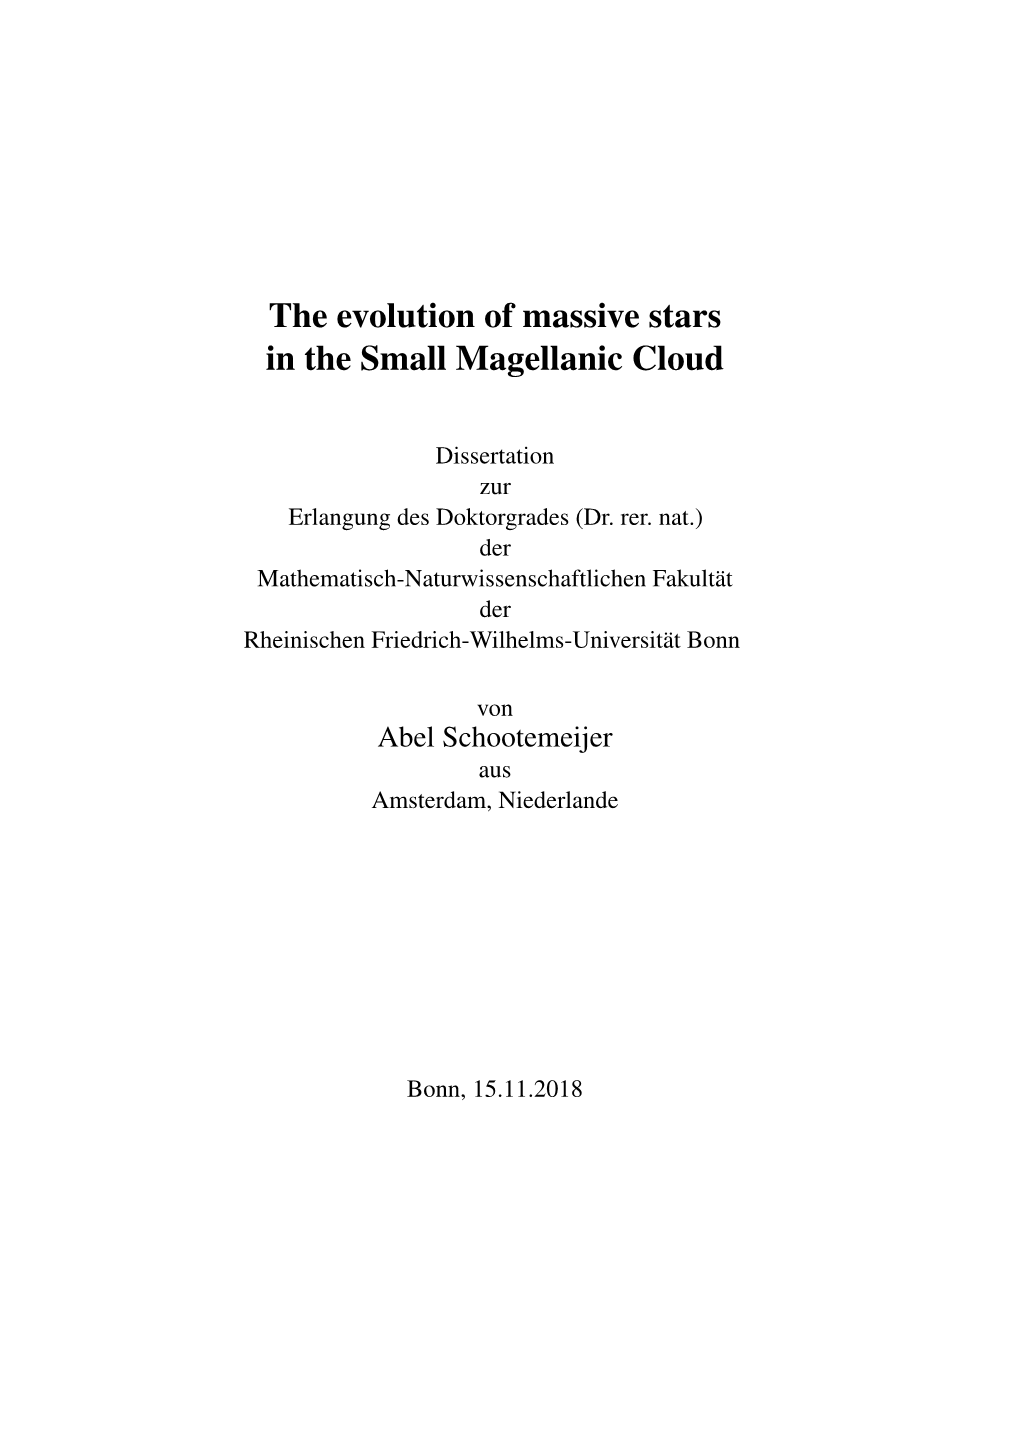 The Evolution of Massive Stars in the Small Magellanic Cloud